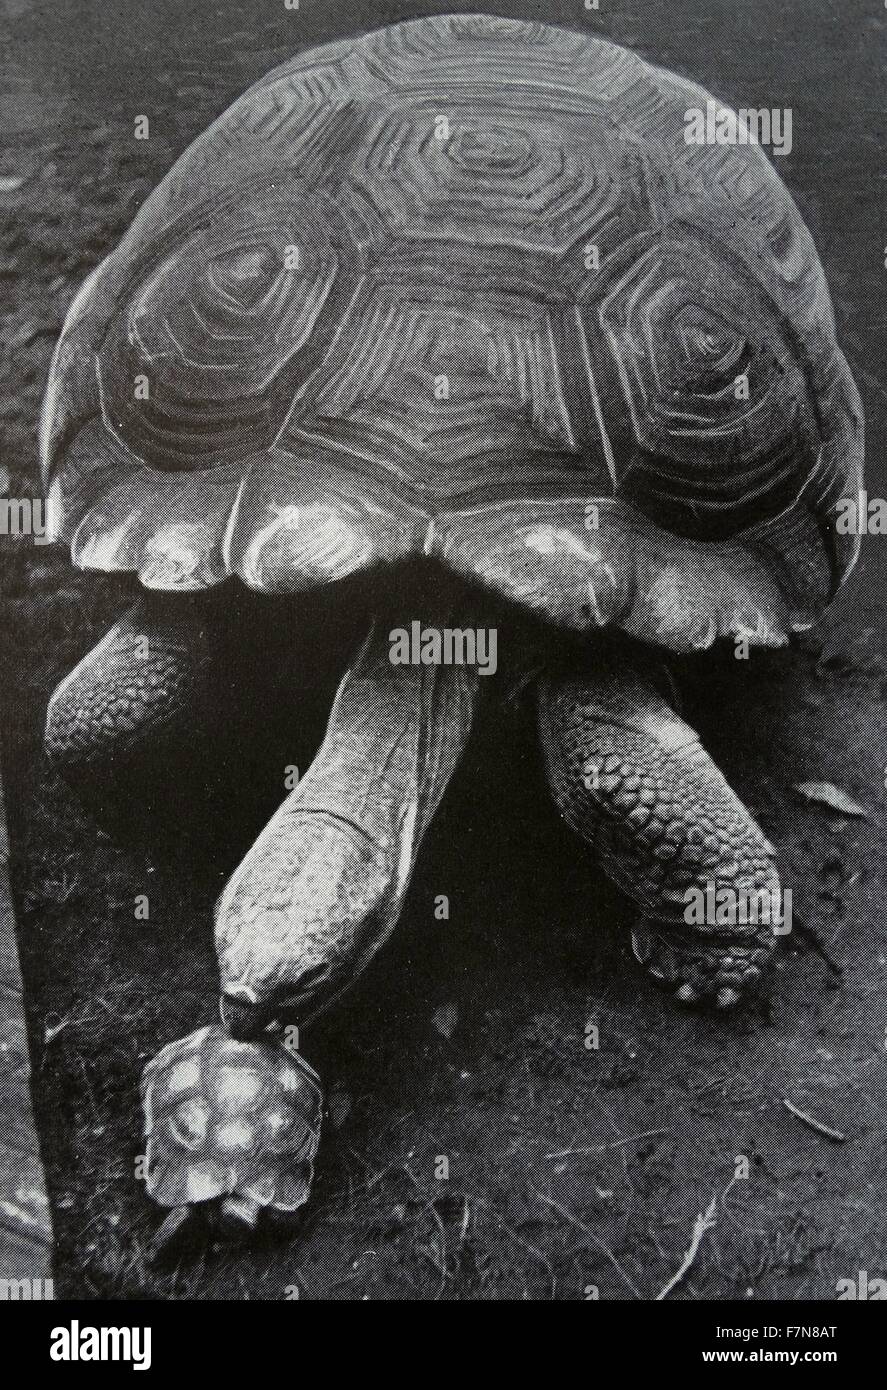 Fotografia di due tartarughe, Big Claus e poco Claus, i quali differiscono notevolmente in termini di dimensioni. Datato 1947 Foto Stock